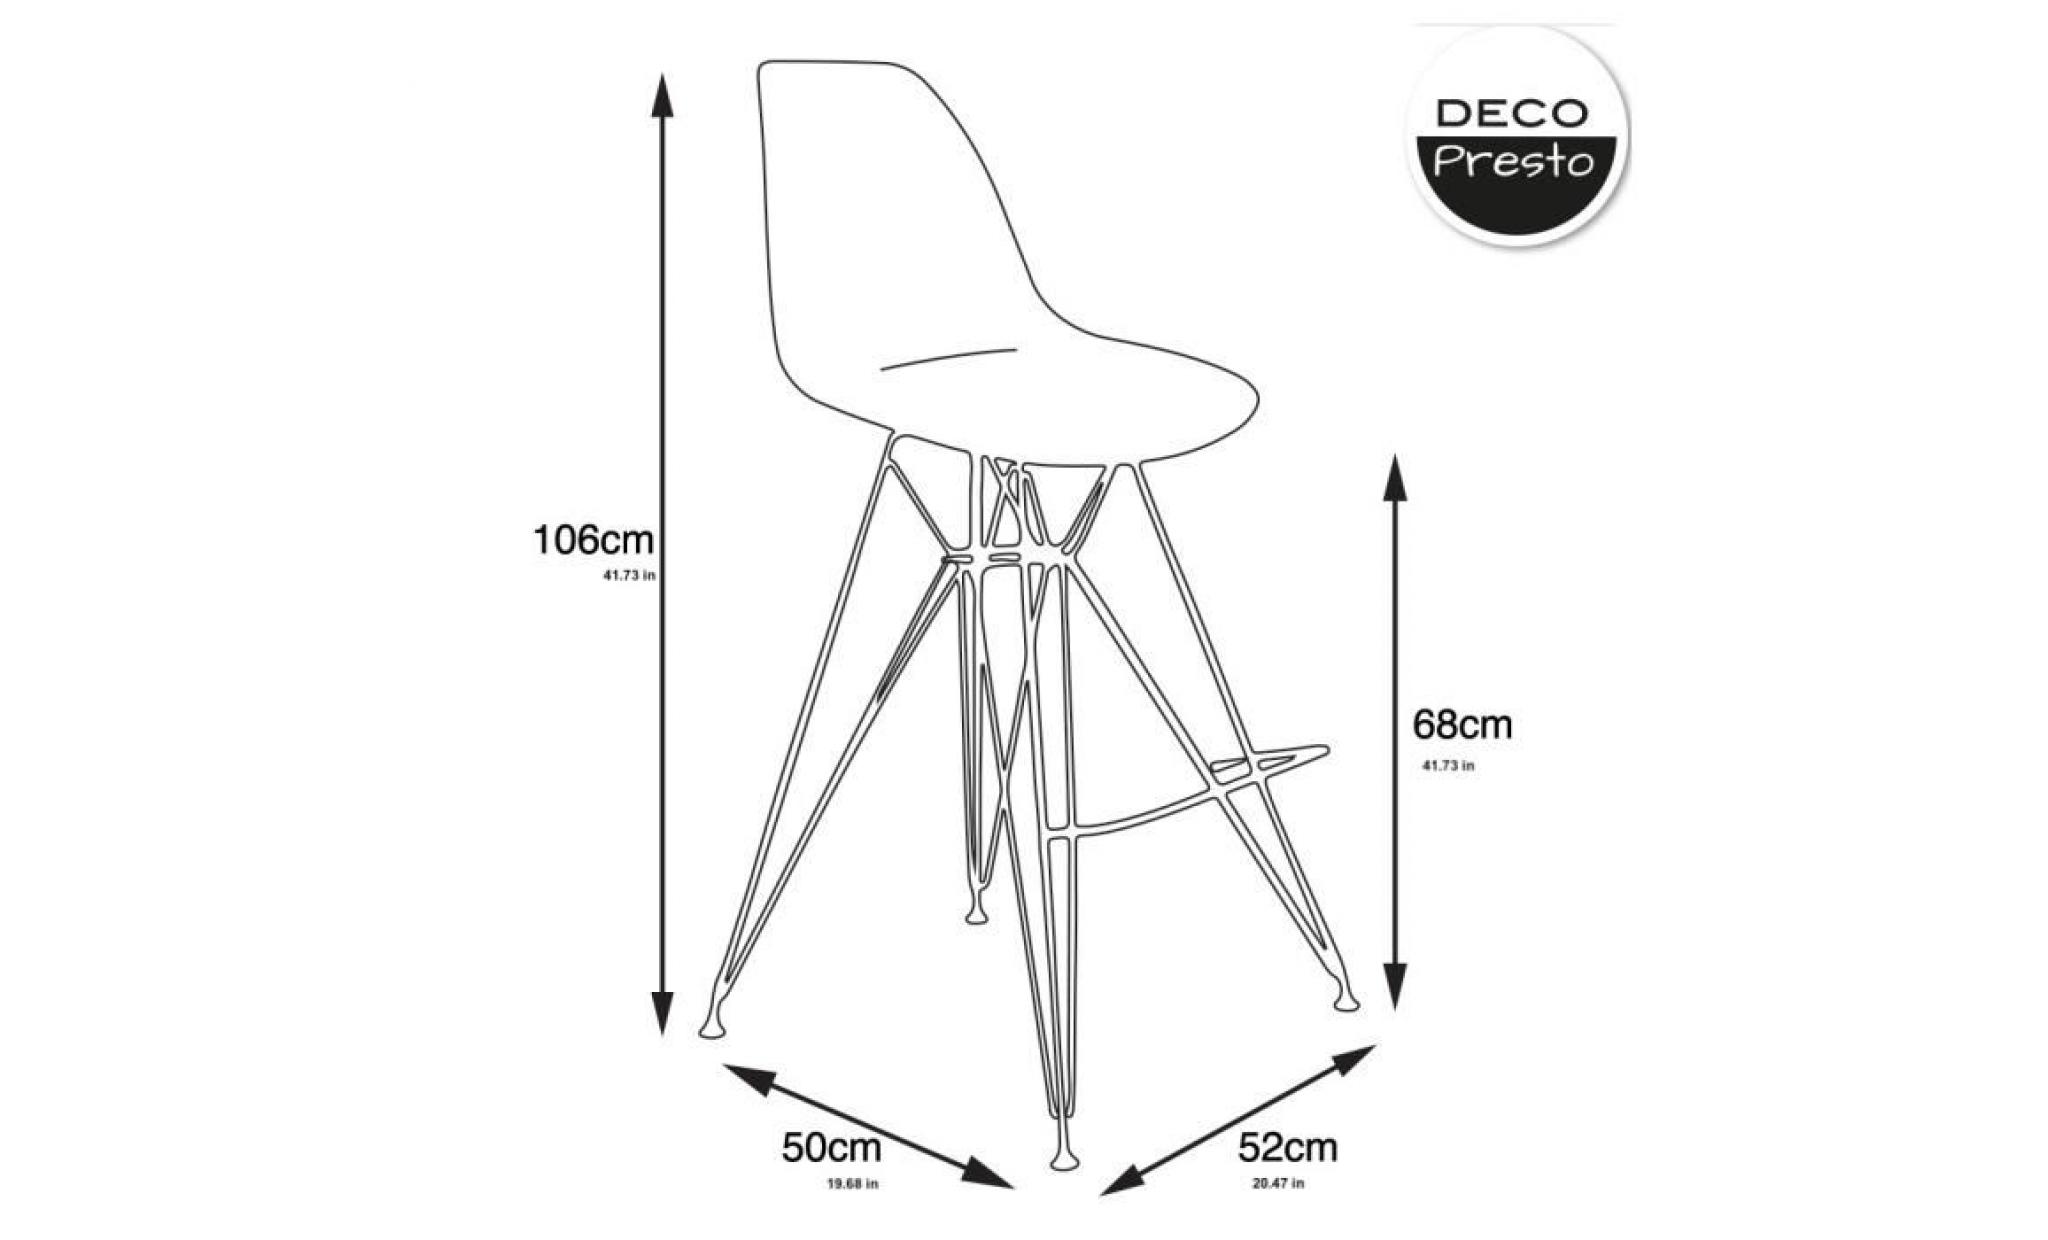 1 x chaise haute tabouret bar design inspiration eiffel   blanc pieds  acier vernis rouge  decopresto dp dsrhr wh 1p pas cher